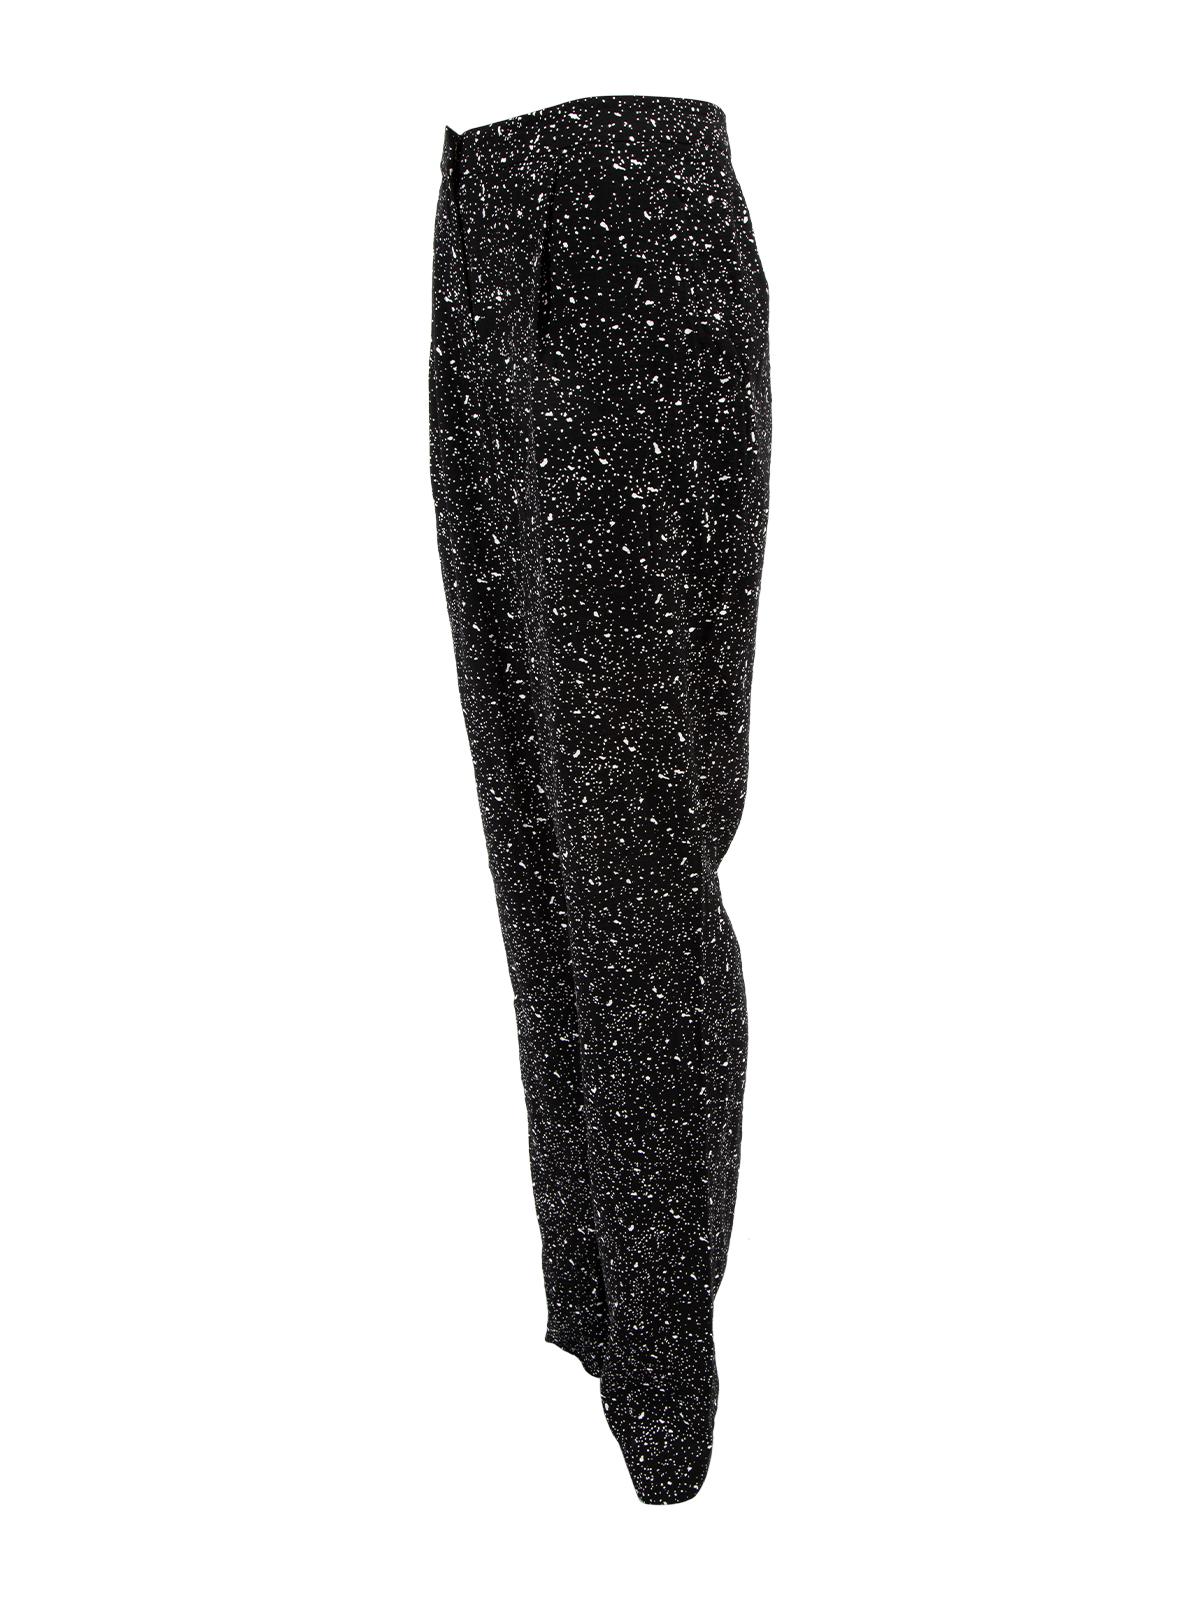 Pre-Loved Diane Von Furstenberg Women's Martine Galaxy Trousers For Sale 1